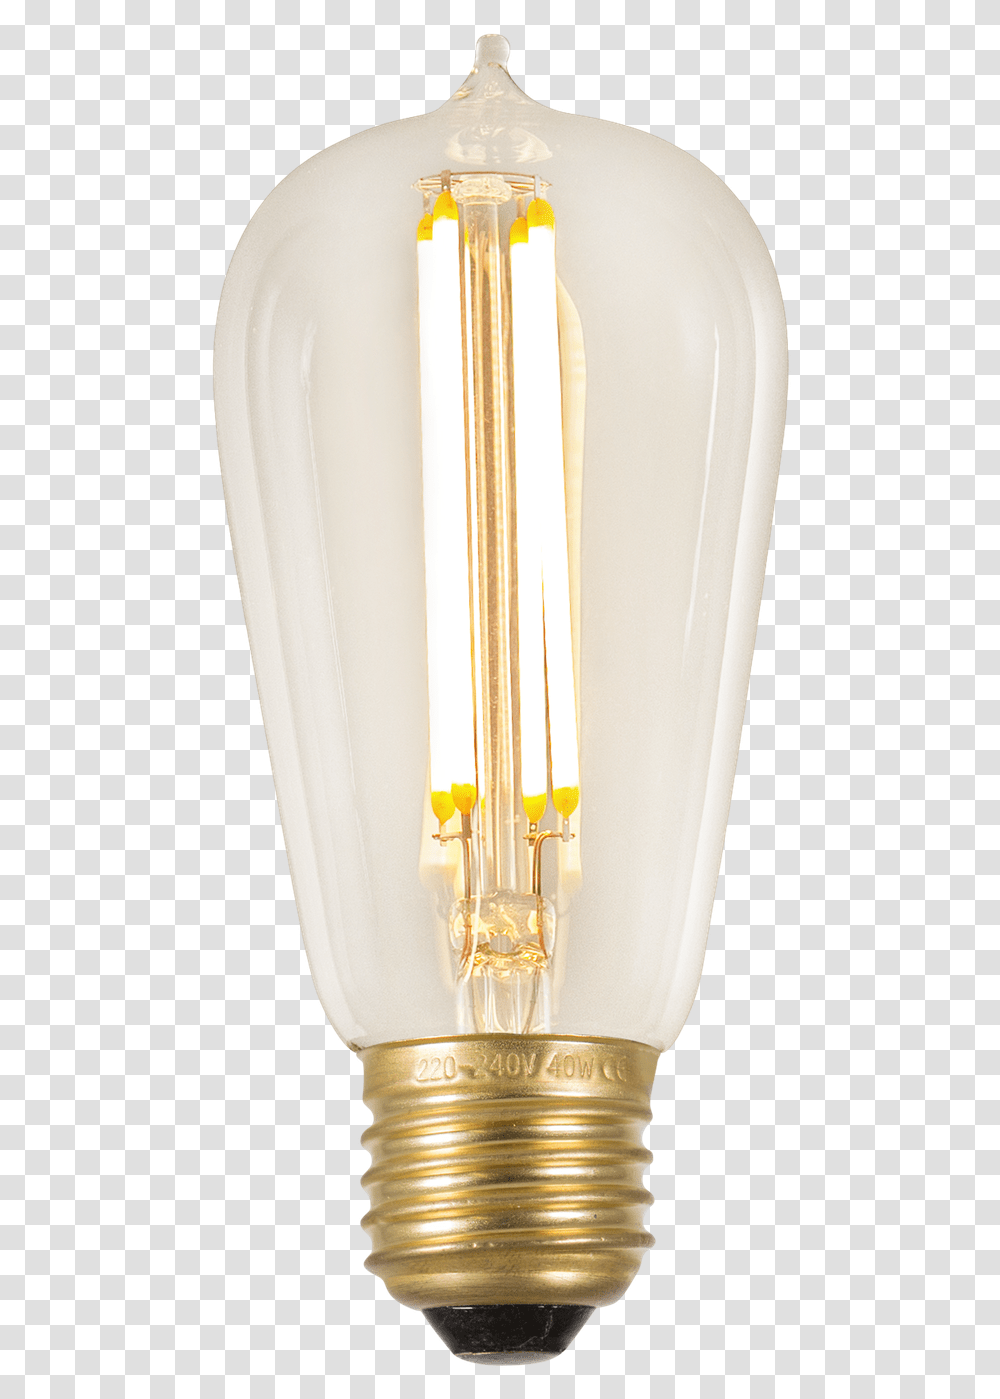 Compact Fluorescent Lamp, Light, Light Fixture, Lightbulb Transparent Png